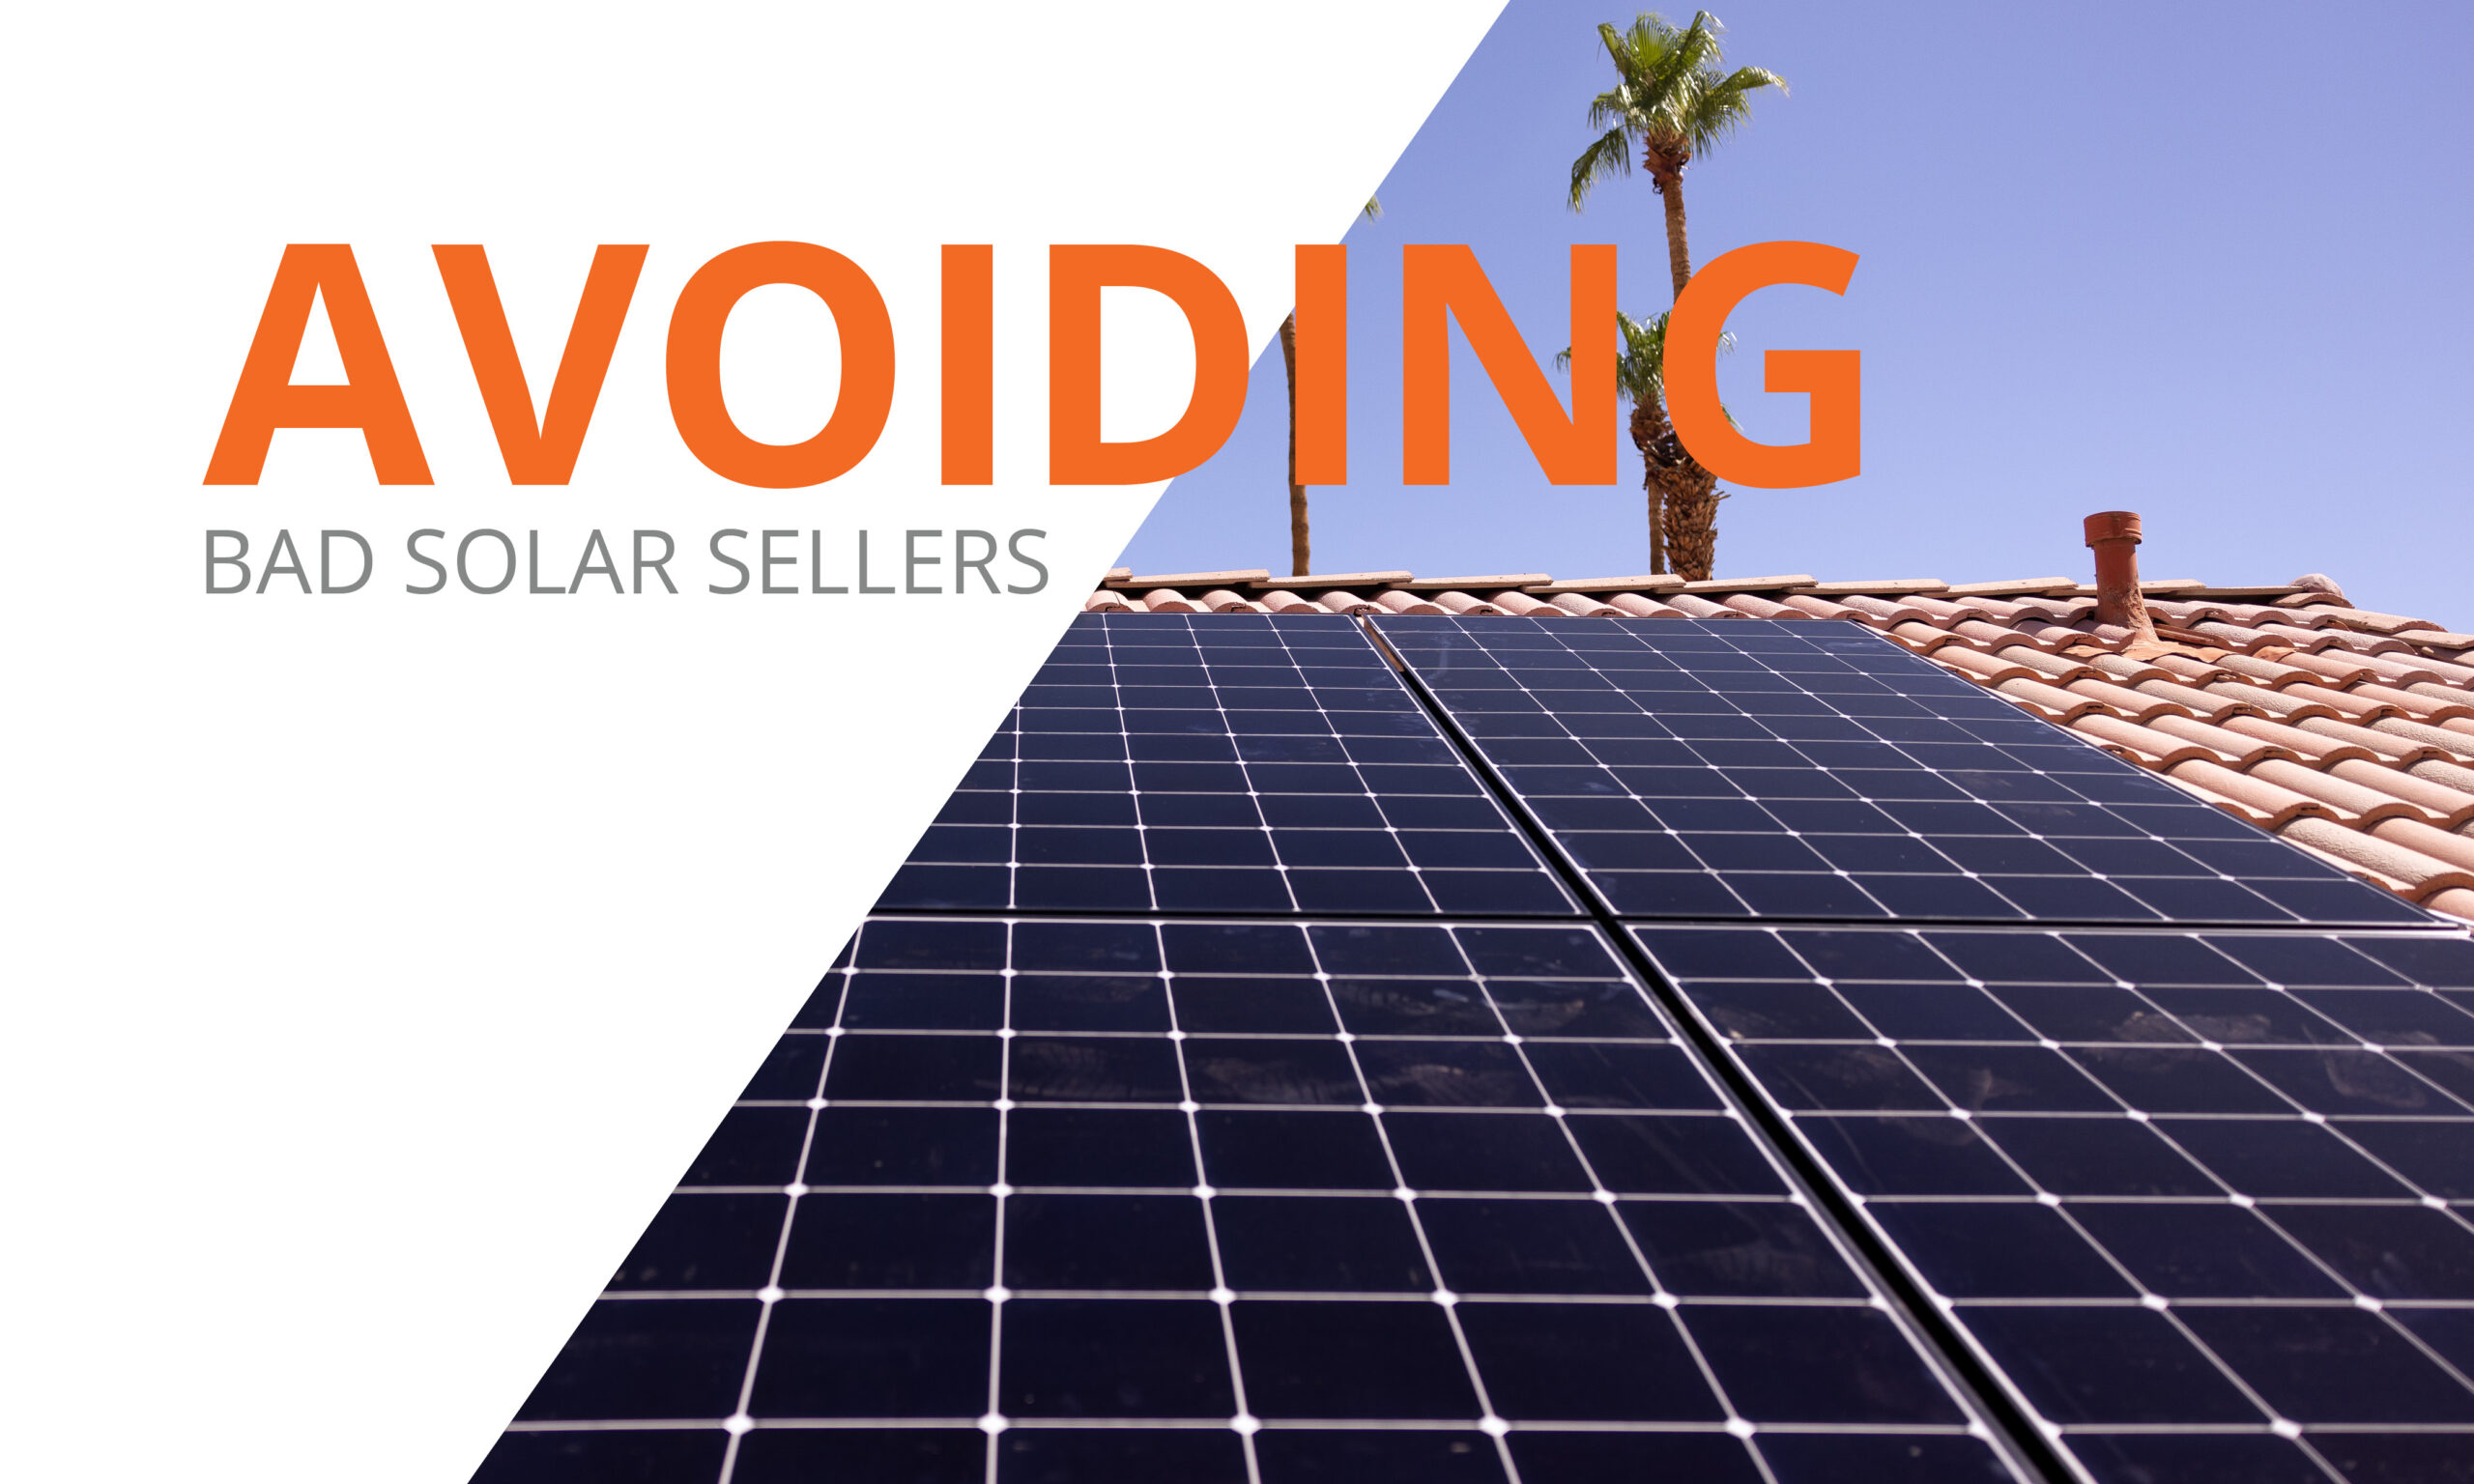 Avoiding Bad Solar Sellers. Solar panels on a home.